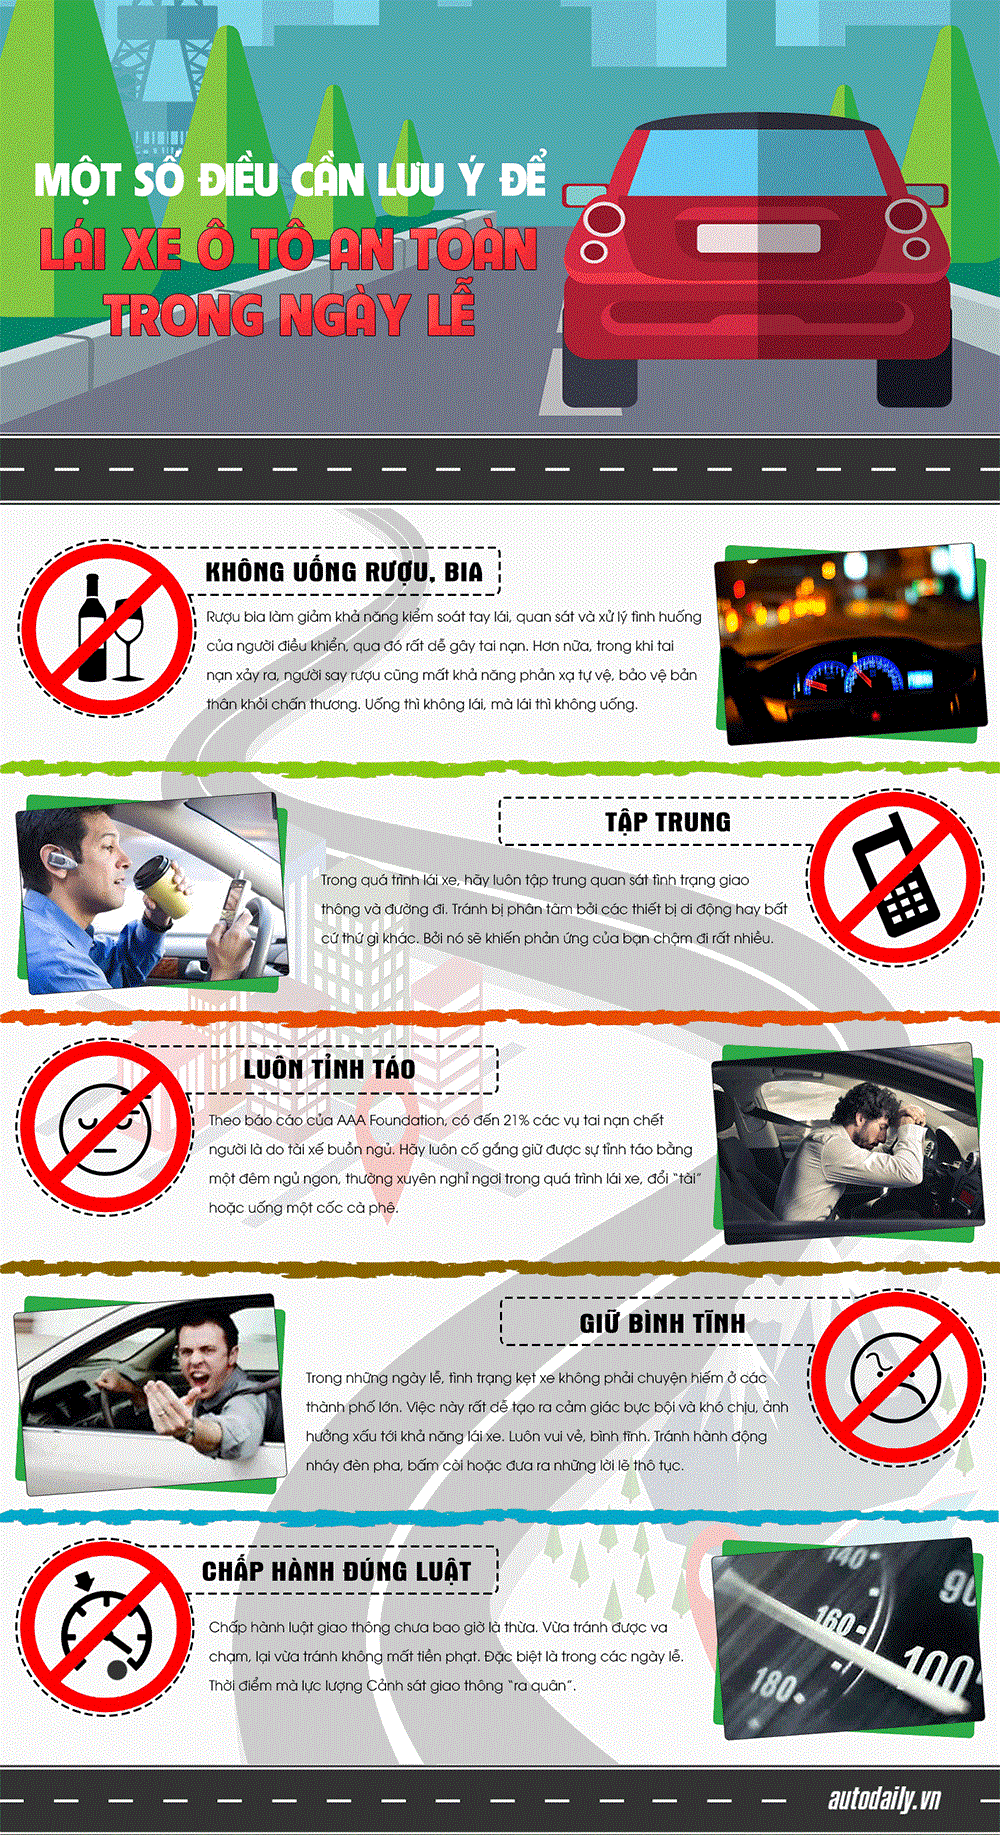 Một số lưu ý để lái xe an toàn trong ngày lễ